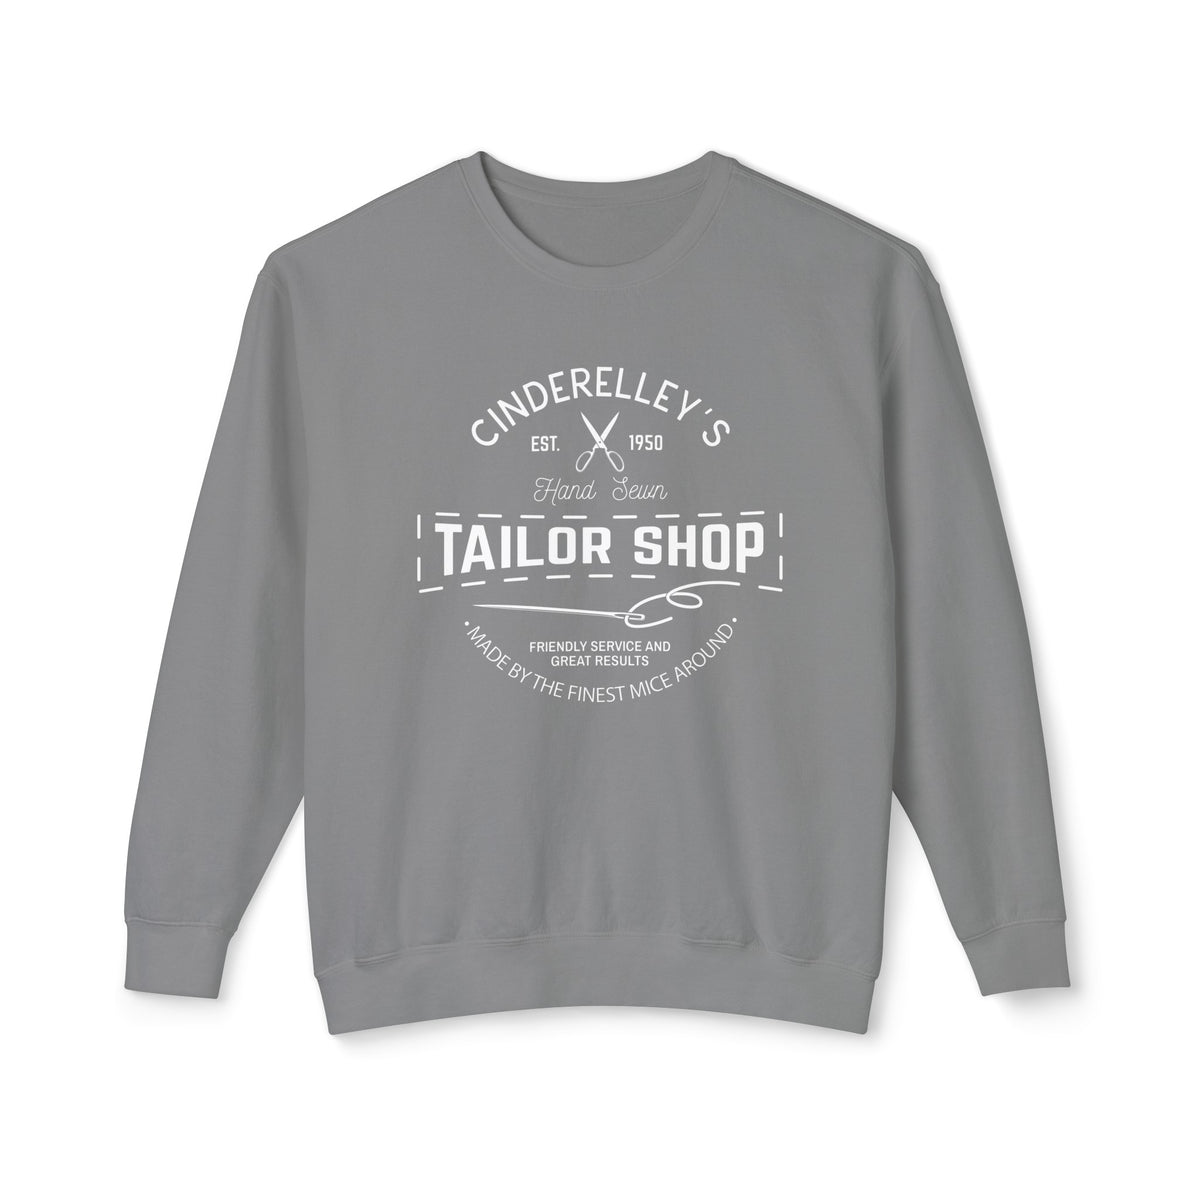 Cinderelley's Tailor Shop Unisex Lightweight Comfort Colors Crewneck Sweatshirt